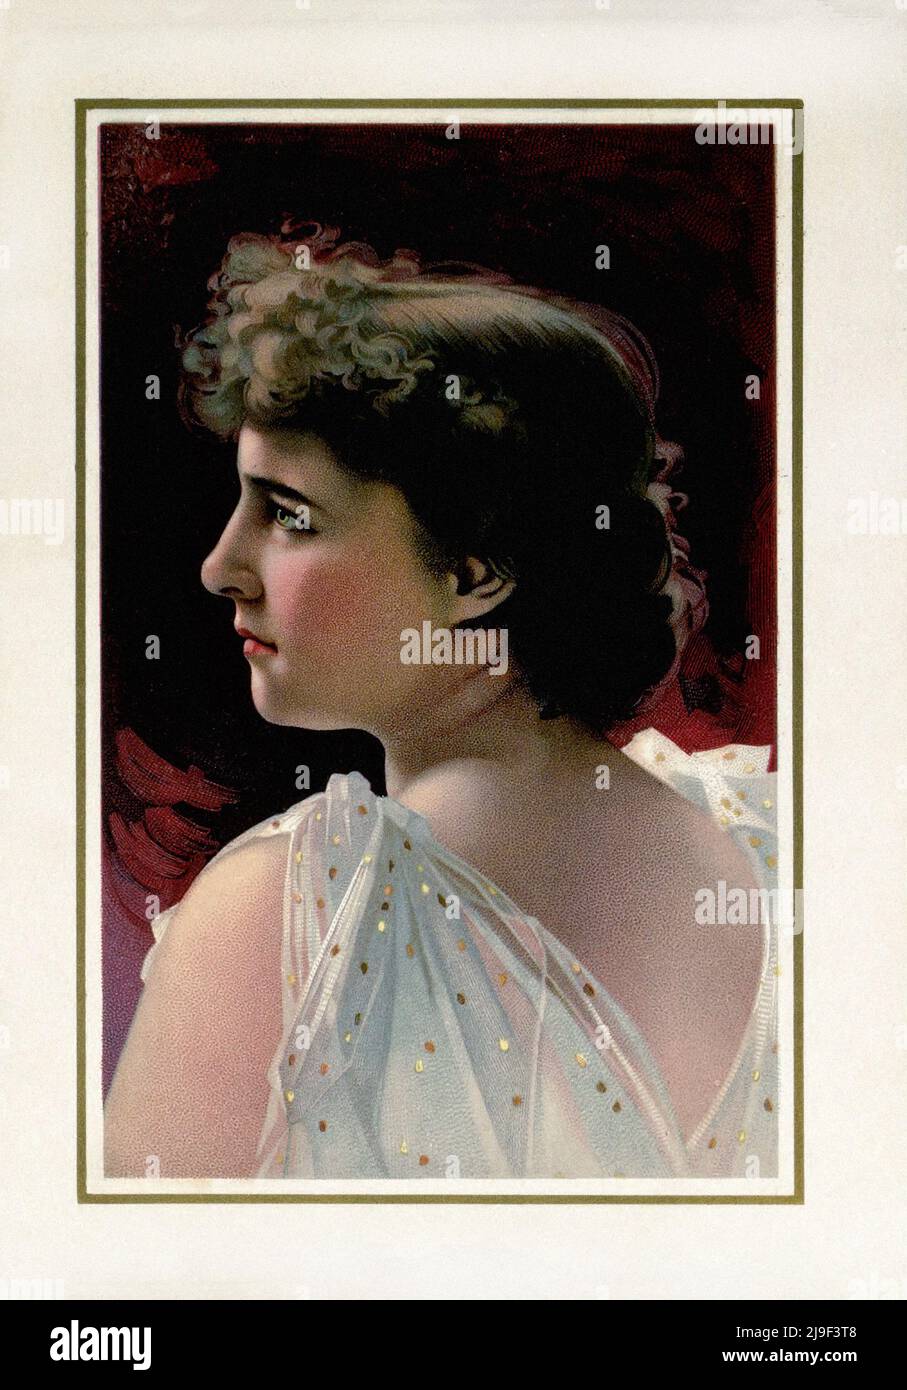 Litografía en color de Emilie Charlotte Langtry. Emilie Charlotte Langtry (née Le Breton; 1853 – 1929), conocido como Lillie (o Lillie) Langtry y apodado Foto de stock